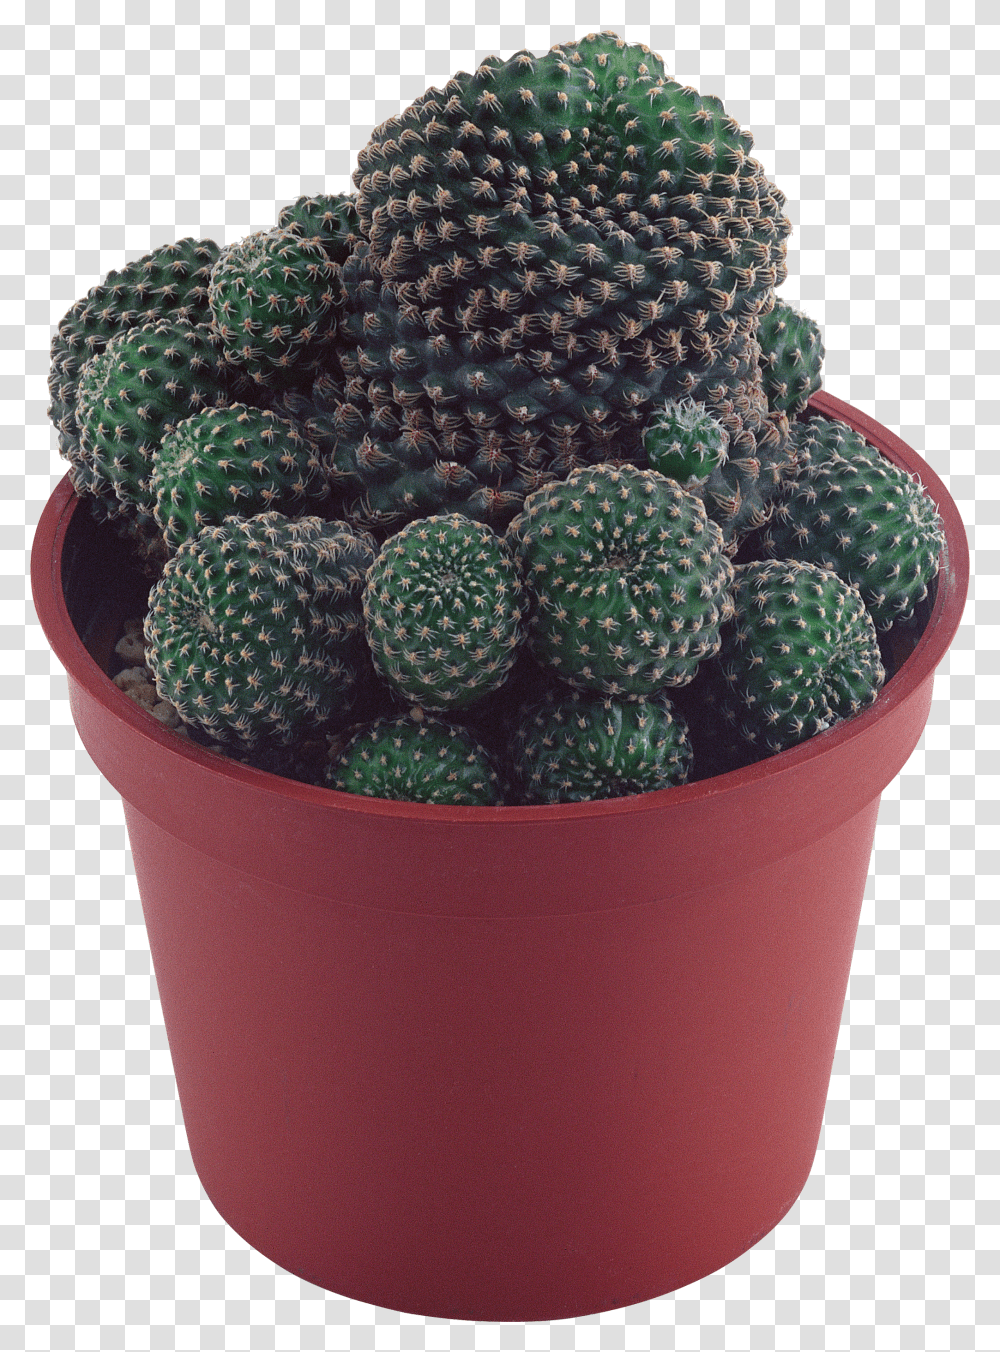 Cactus Image Succulent Plant Background Transparent Png